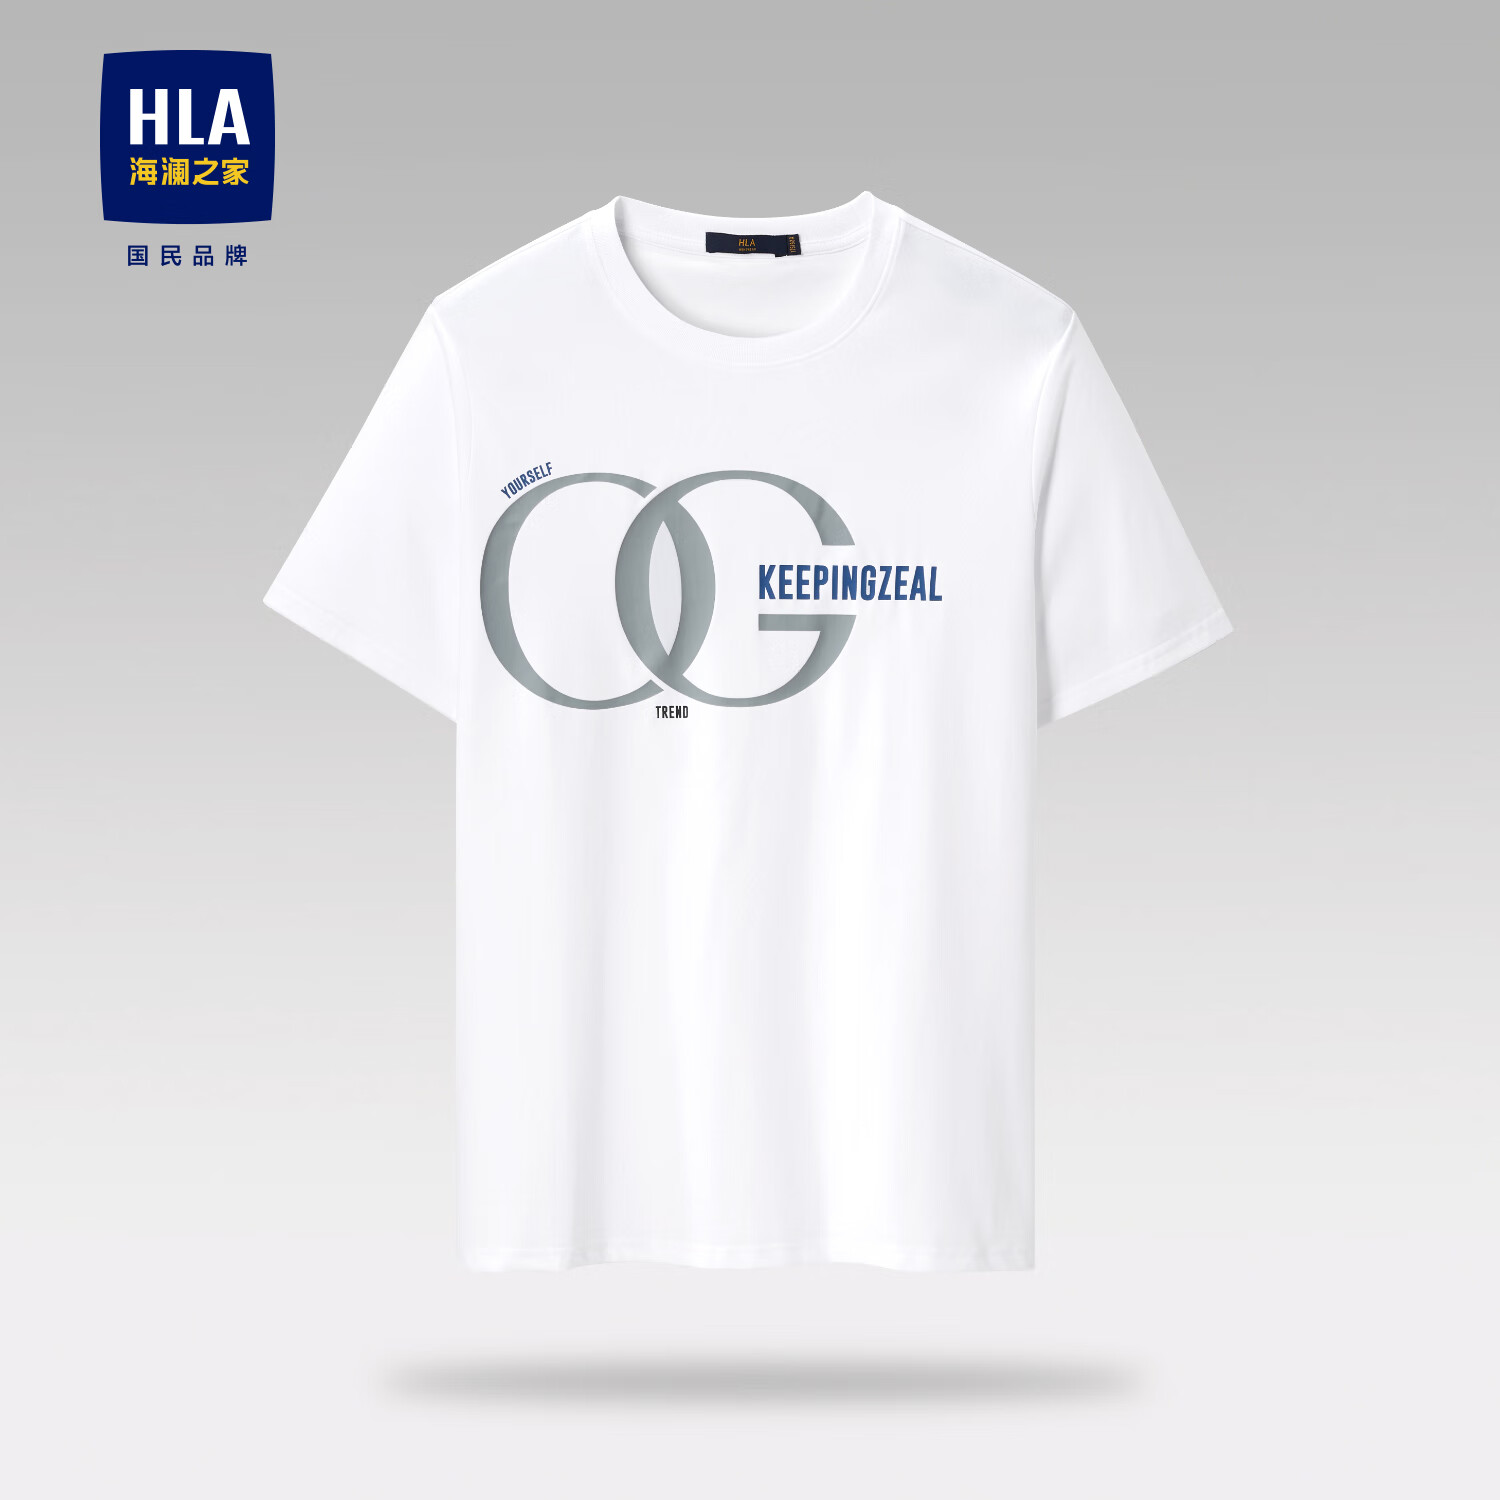 再降价、PLUS会员：HLA 海澜之家 短袖T恤*2件 35元/件(实付70元)